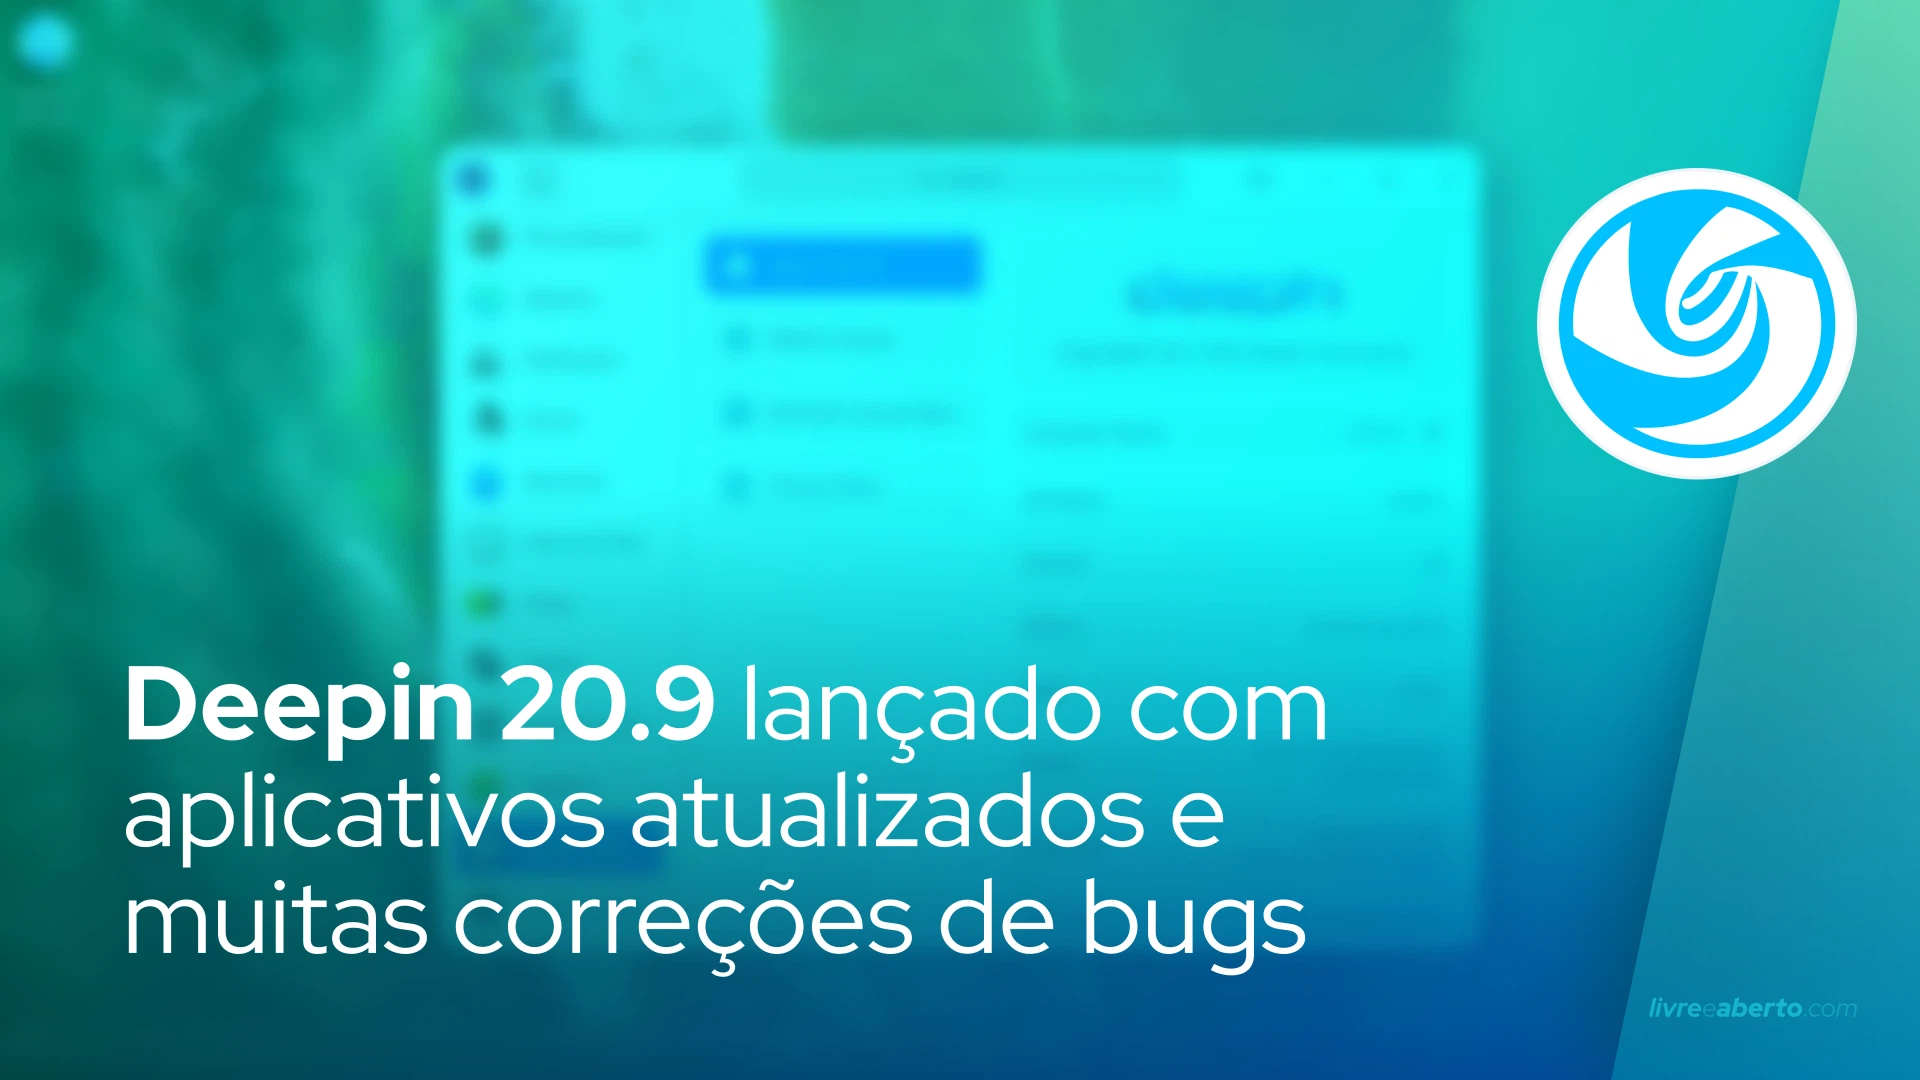 Deepin 20.9 lançado com aplicativos atualizados e muitas correções de bugs